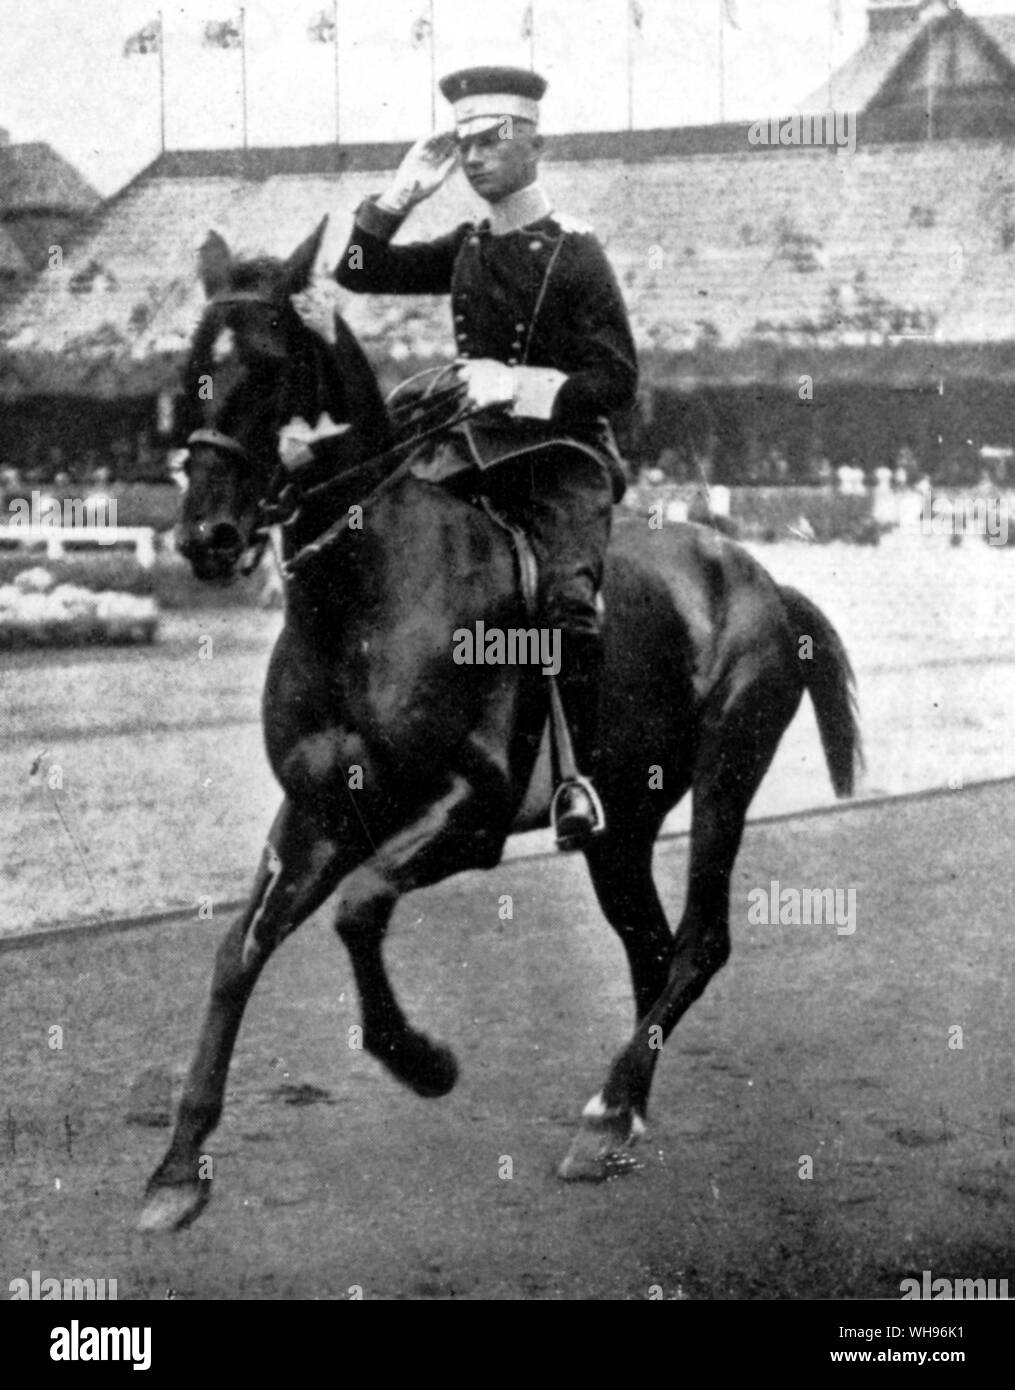 La competizione individuale nel campo della concorrenza tenente militare von Rochow Germania 2 premio ai Giochi Olimpici Stoccolma 1912 Foto Stock